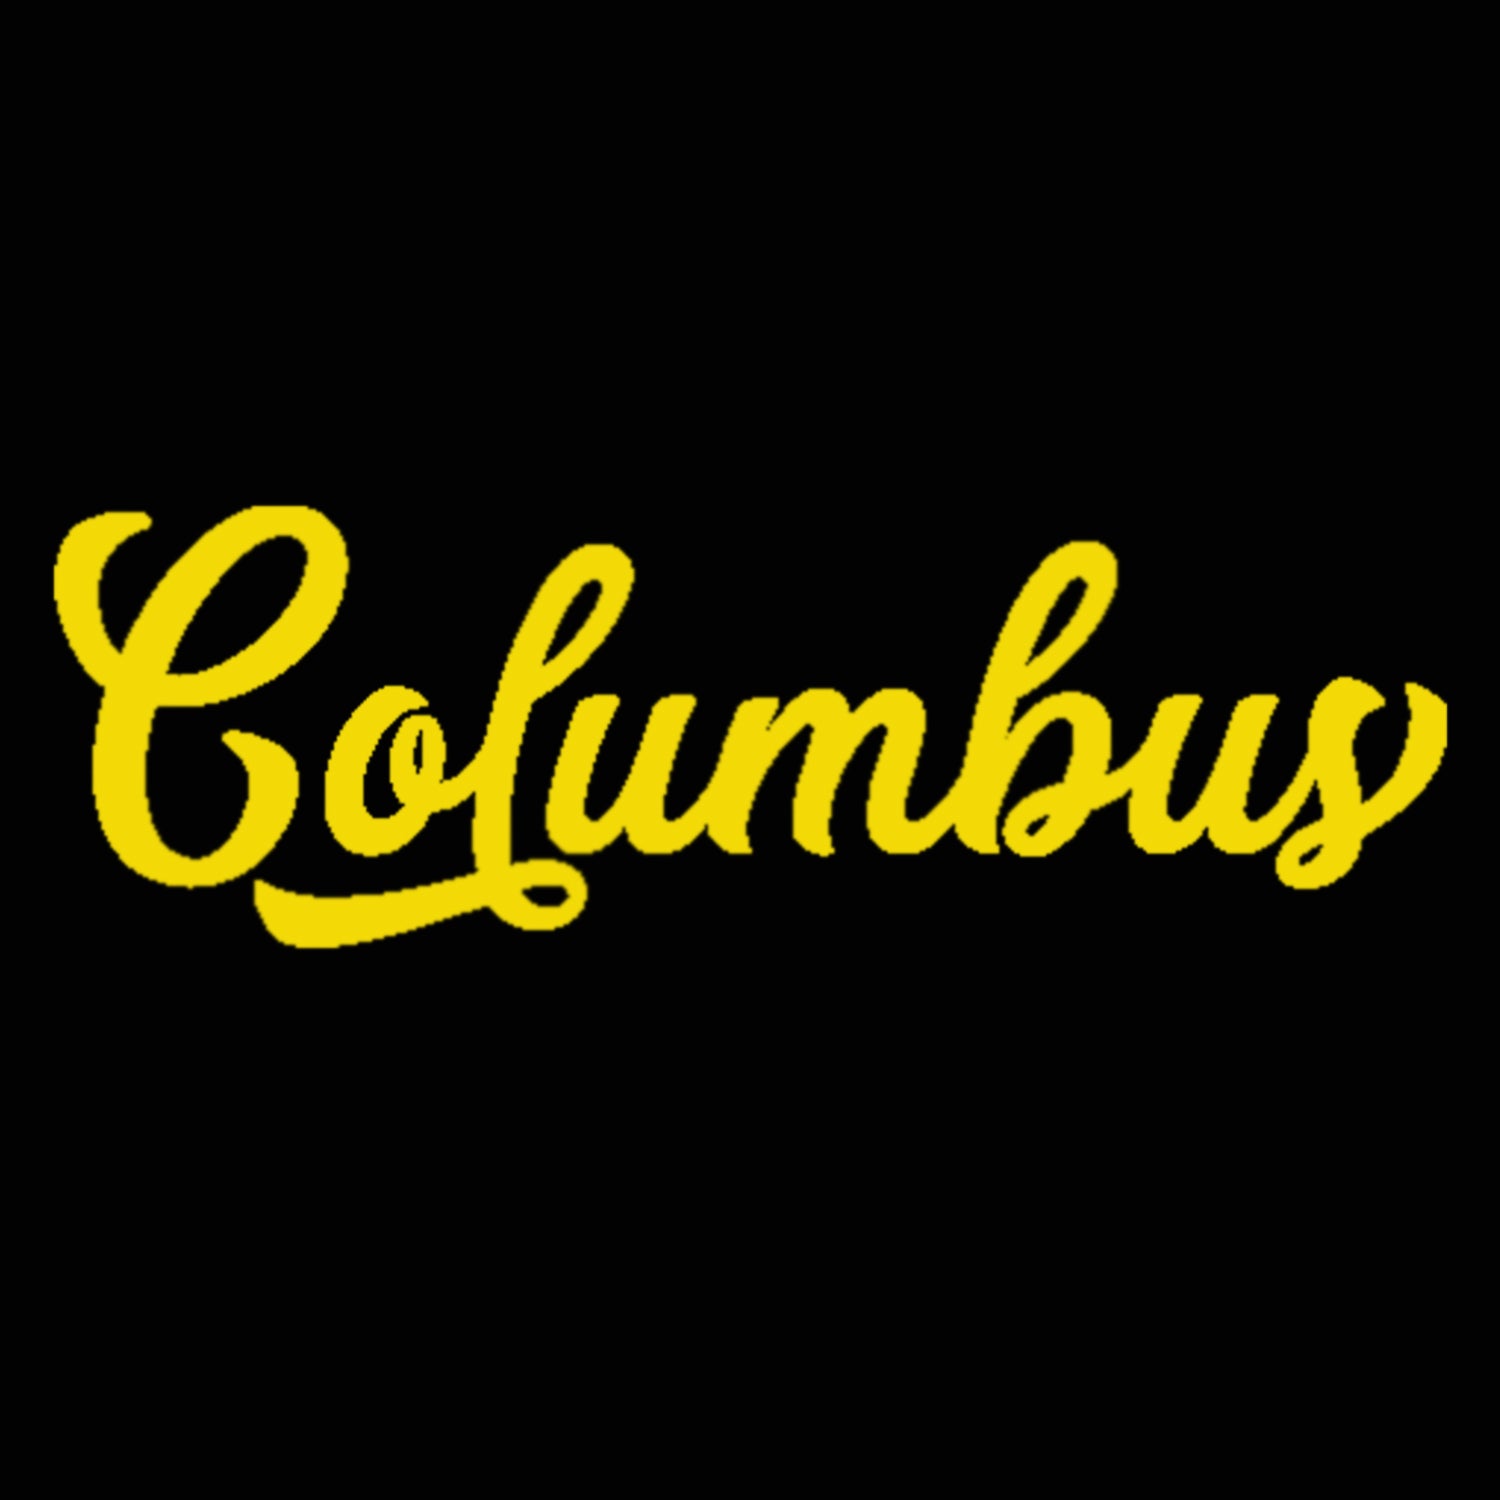 Columbus Script